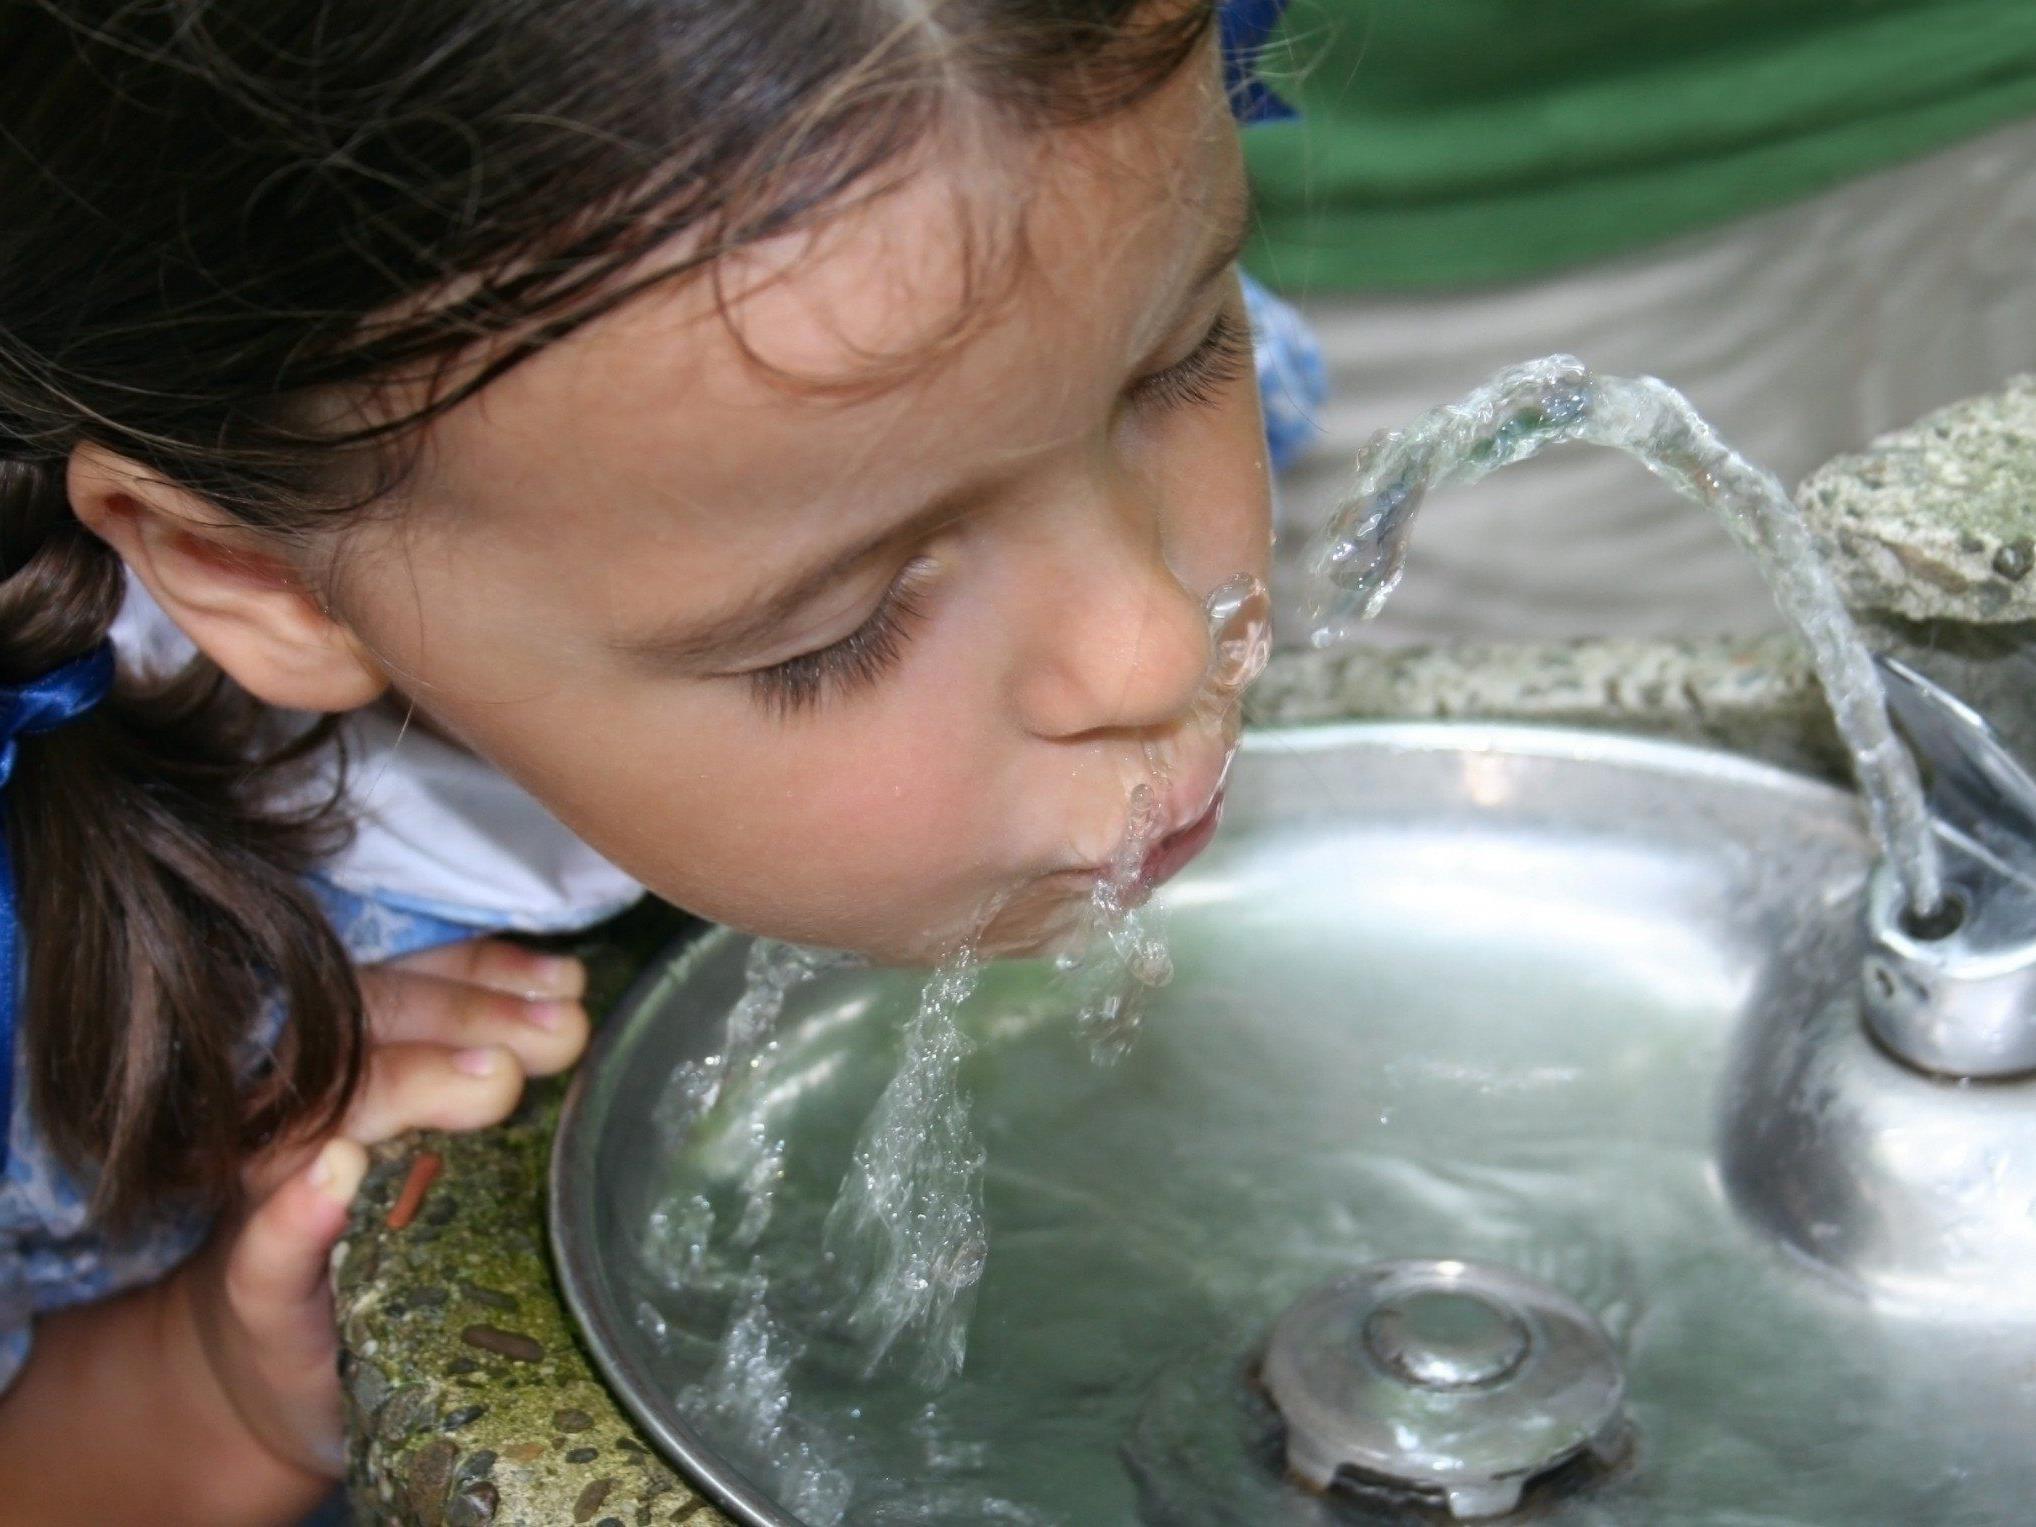 Kinder im Volksschulalter sollten täglich etwa einen Liter Wasser trinken und ab  10 Jahren sind 1,25 Liter pro Tag empfehlenswert.